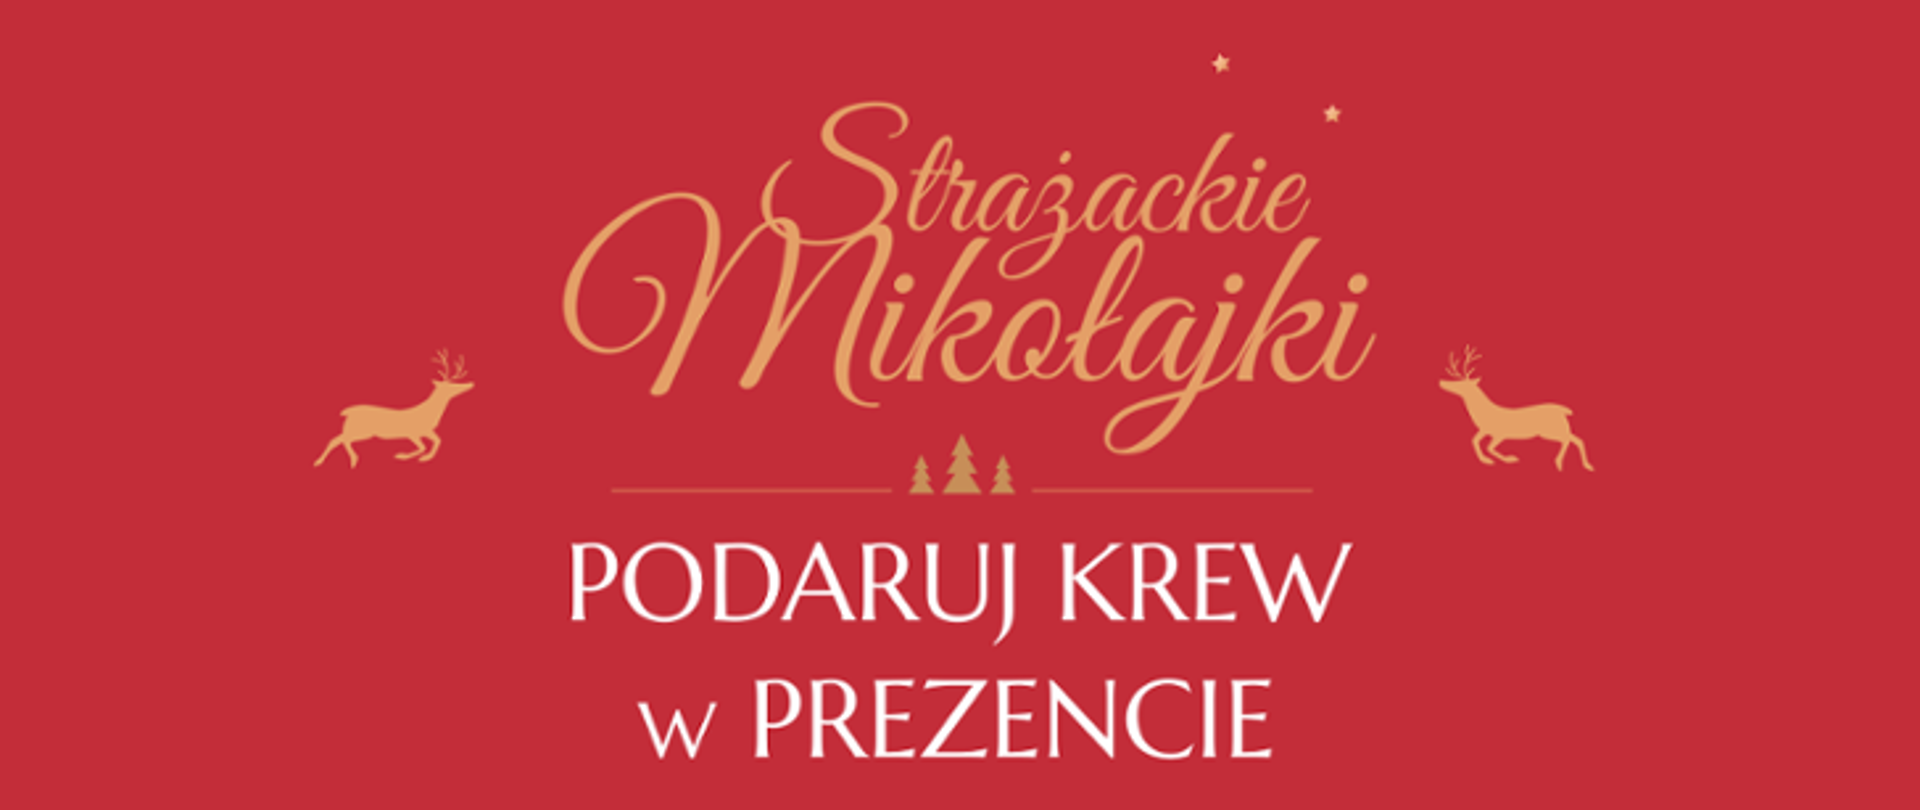 Plakat promujący akcję krwiodawstwa w dniu 6 grudnia 2022 r. - Strażackie Mikołajki - podaruj krew w prezencie.